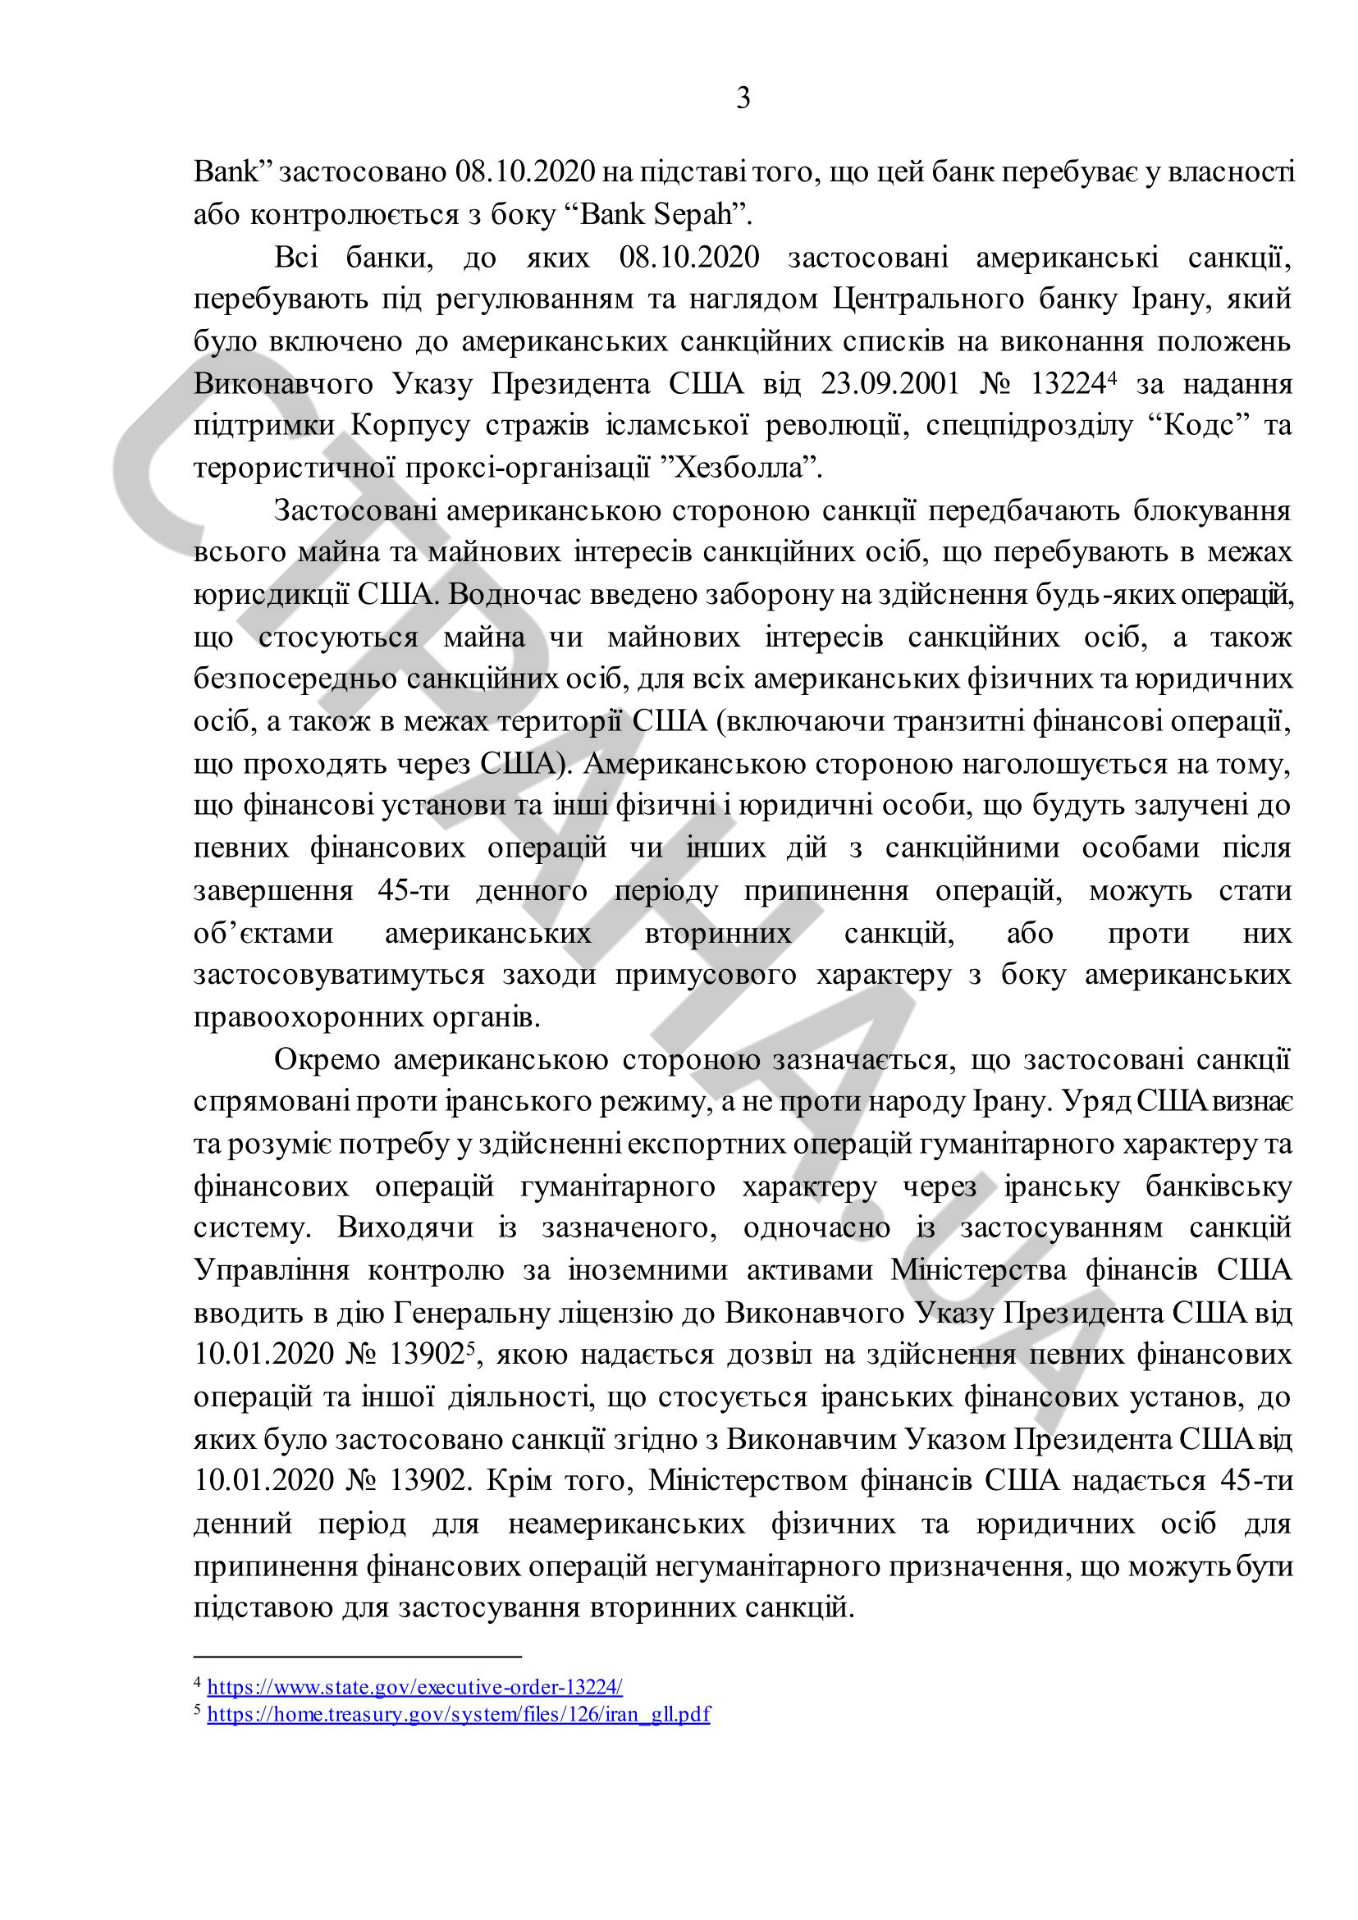 НБУ разослал по украинским банкам список из 17 запретных банков, который спустило Посольство США. Документ: Страна